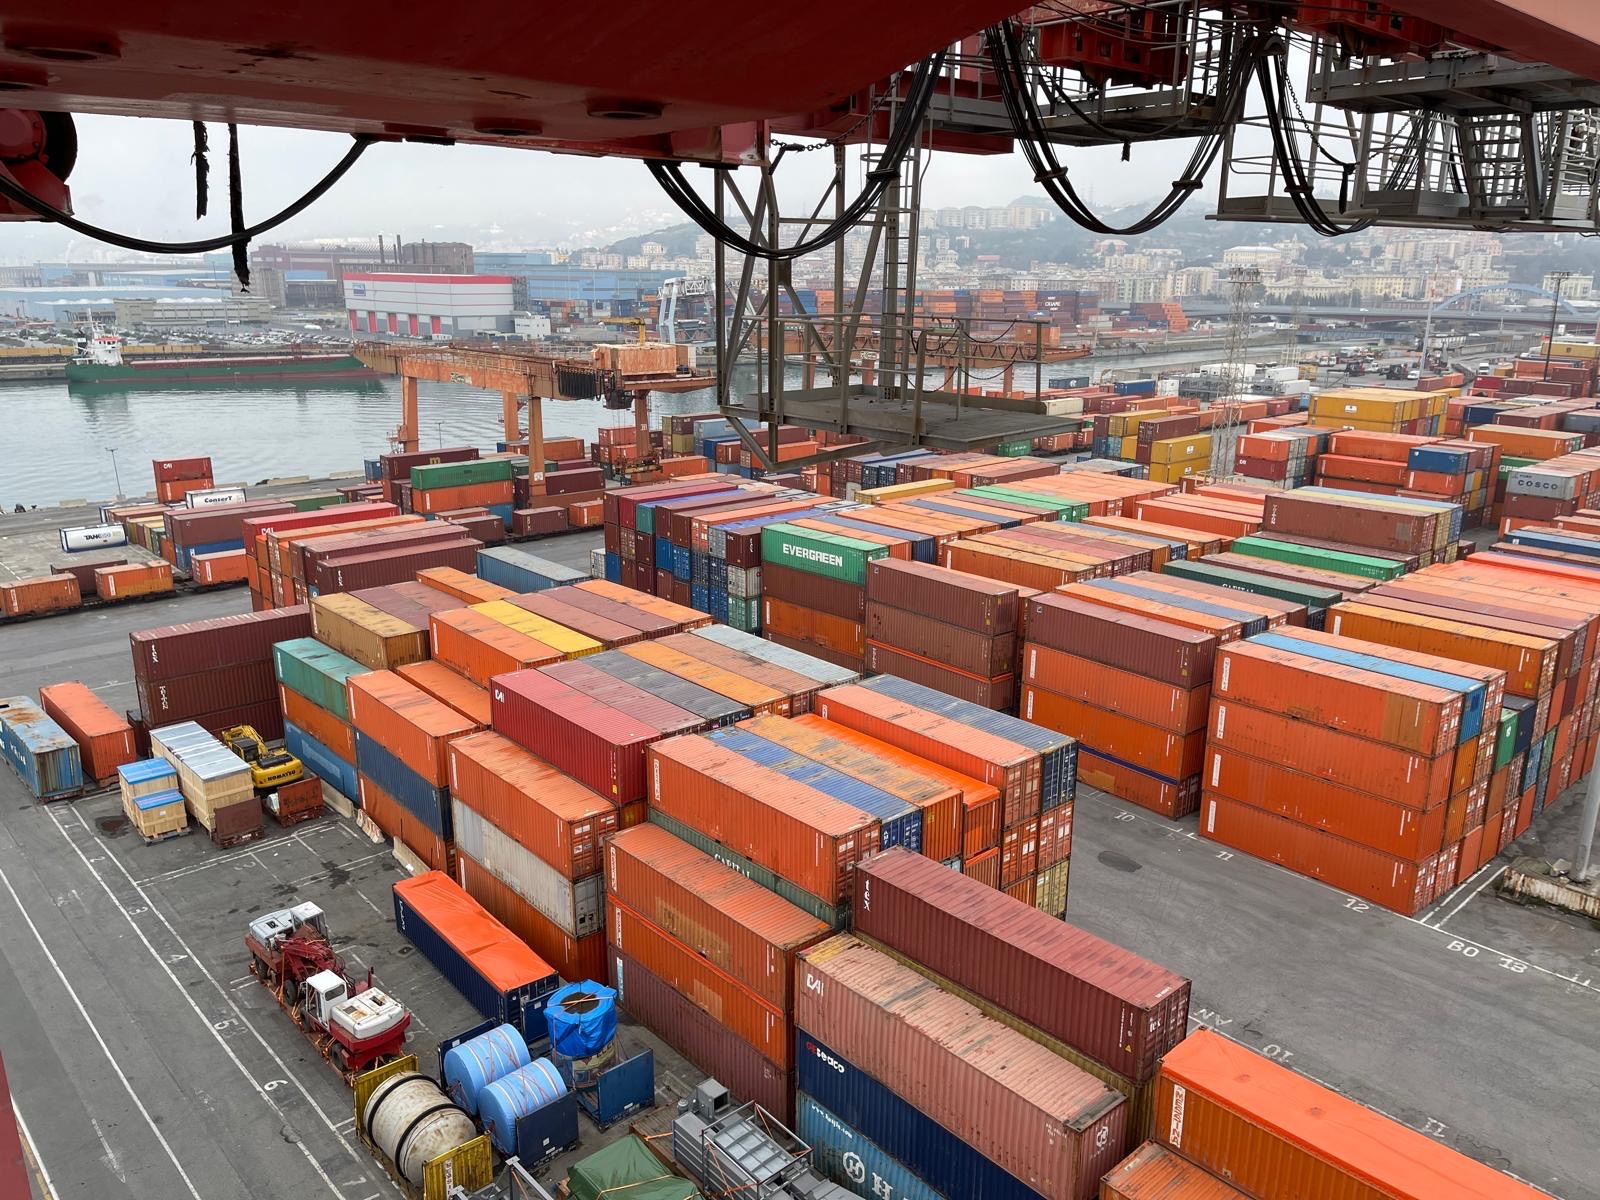 Porti: Uiltrasporti, altissima adesione a scioperi segnale dell’assoluta necessità di arrivare presto ad un giusto rinnovo